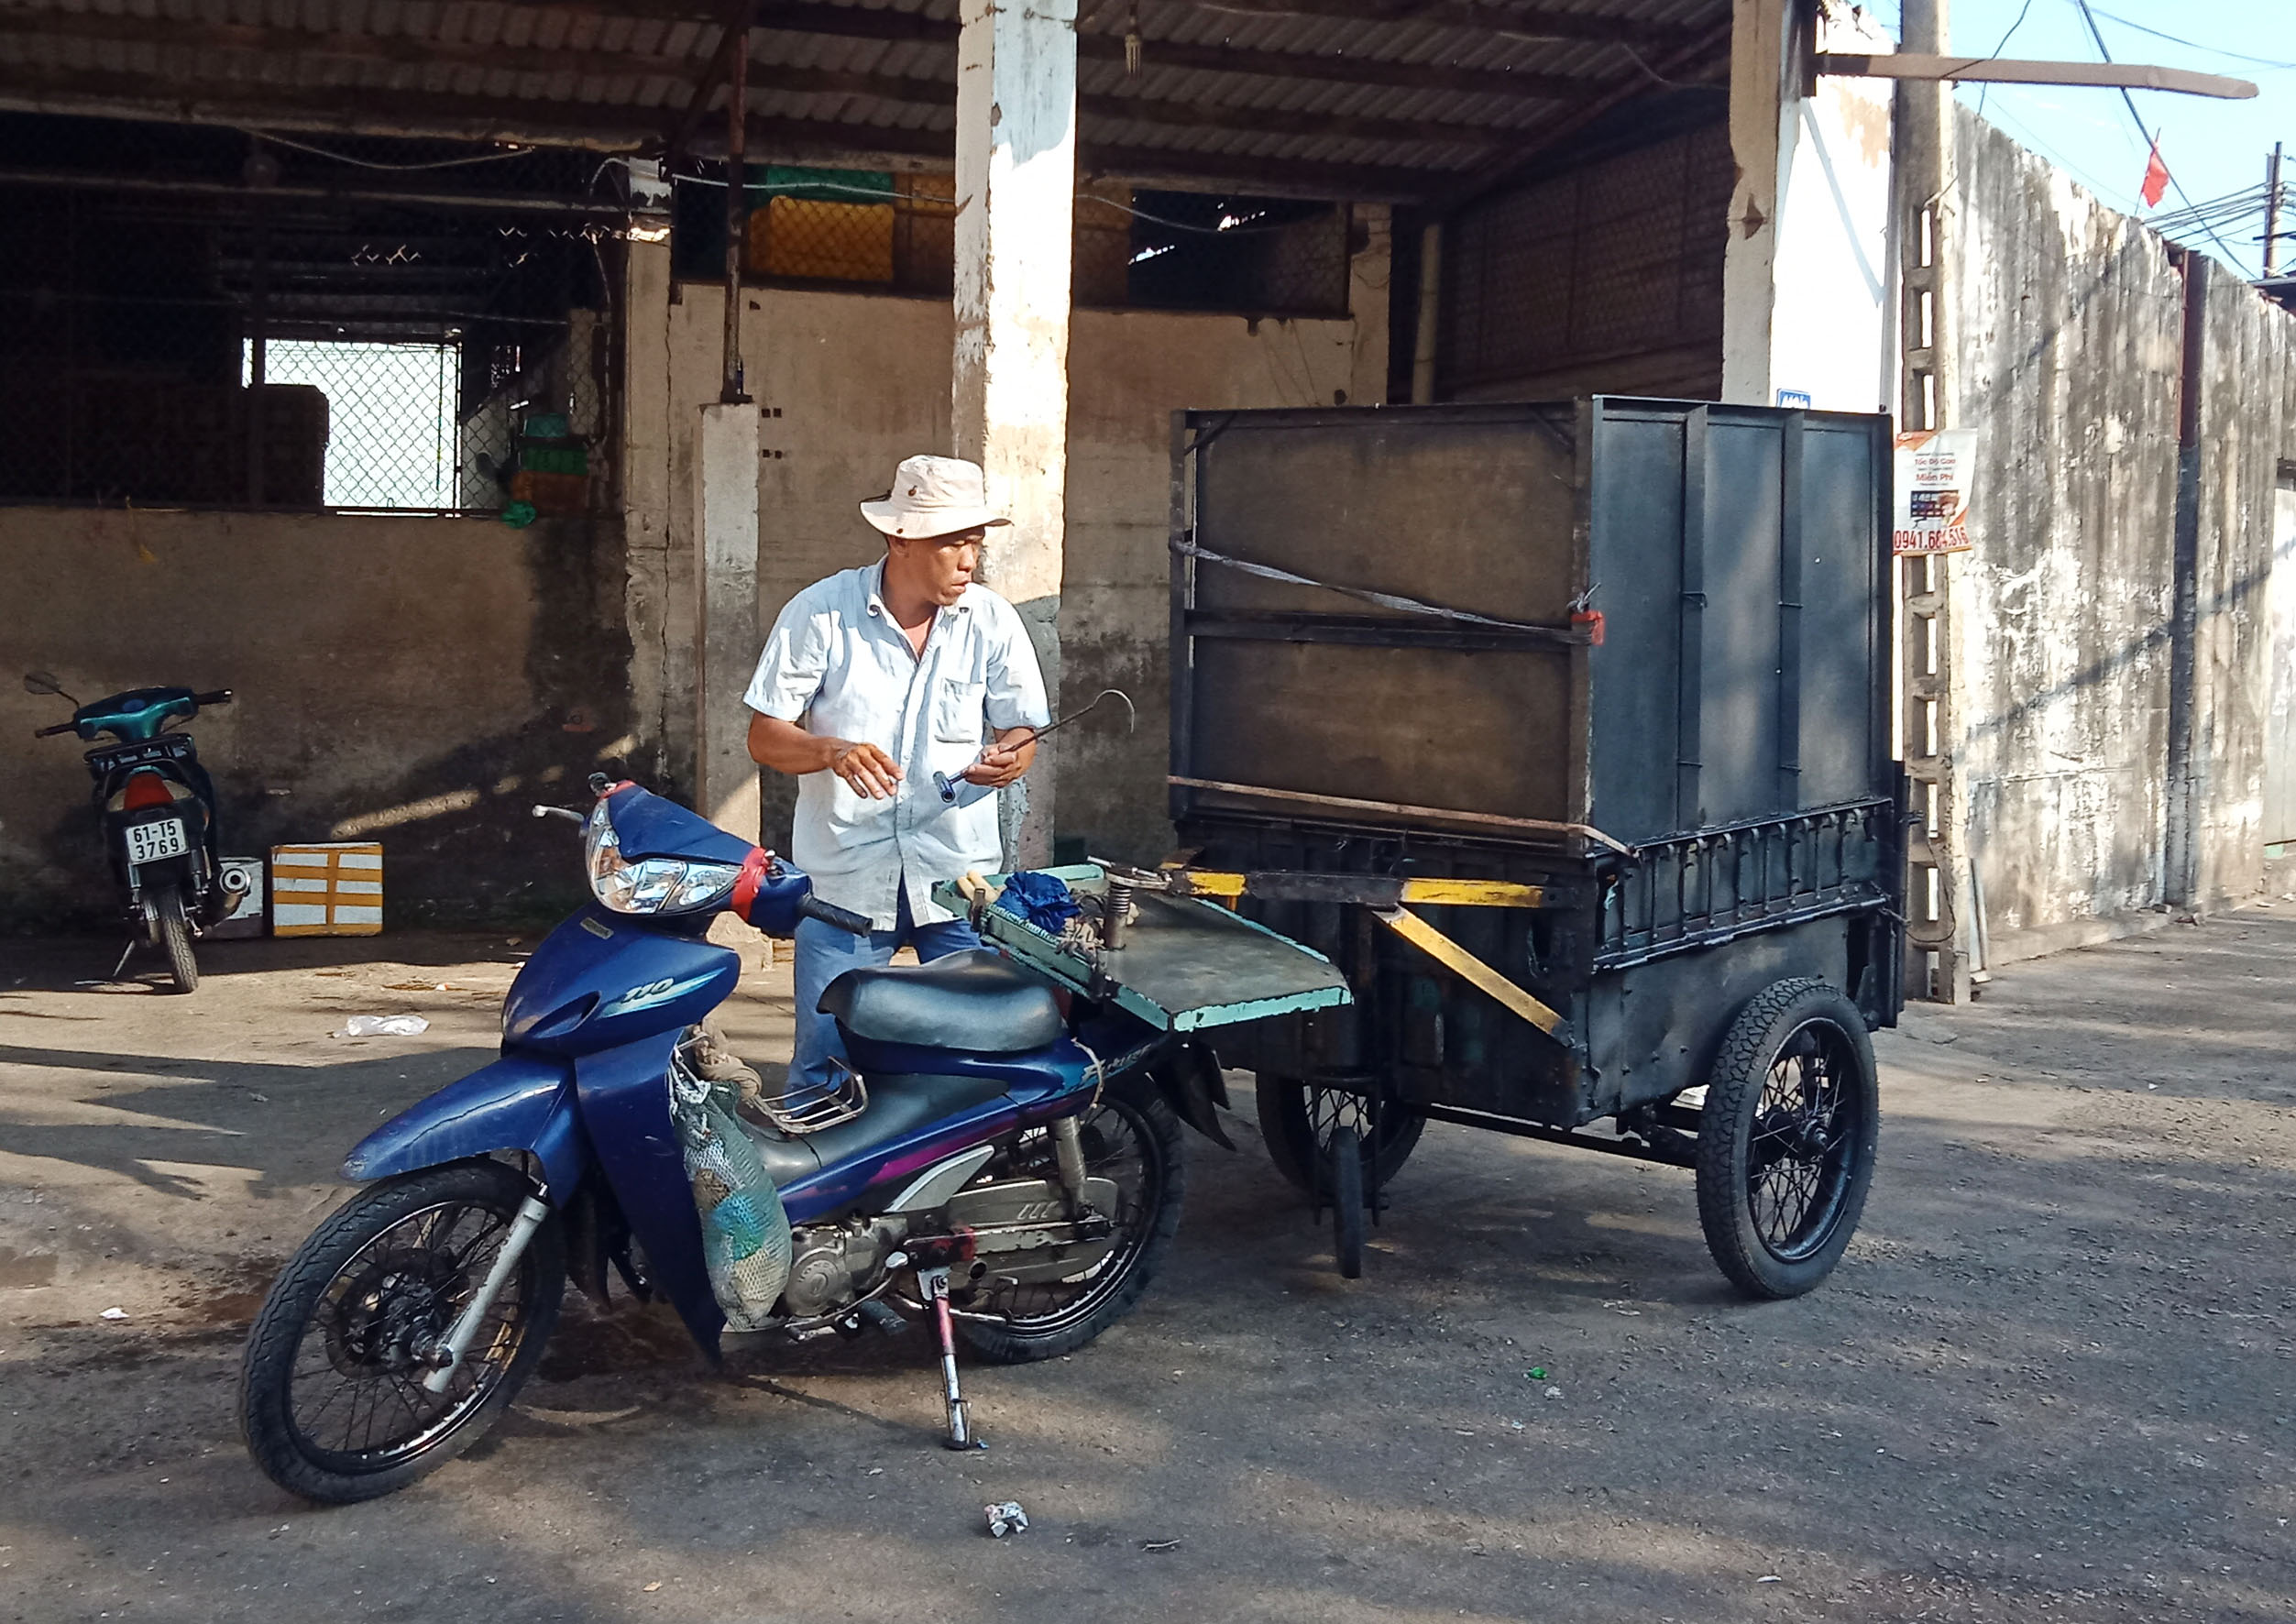 Một xe máy kéo theo thùng xe tự chế bán rau củ tại đường Trần Phú, TP. Vũng Tàu. (Ảnh chụp chiều 20/3).